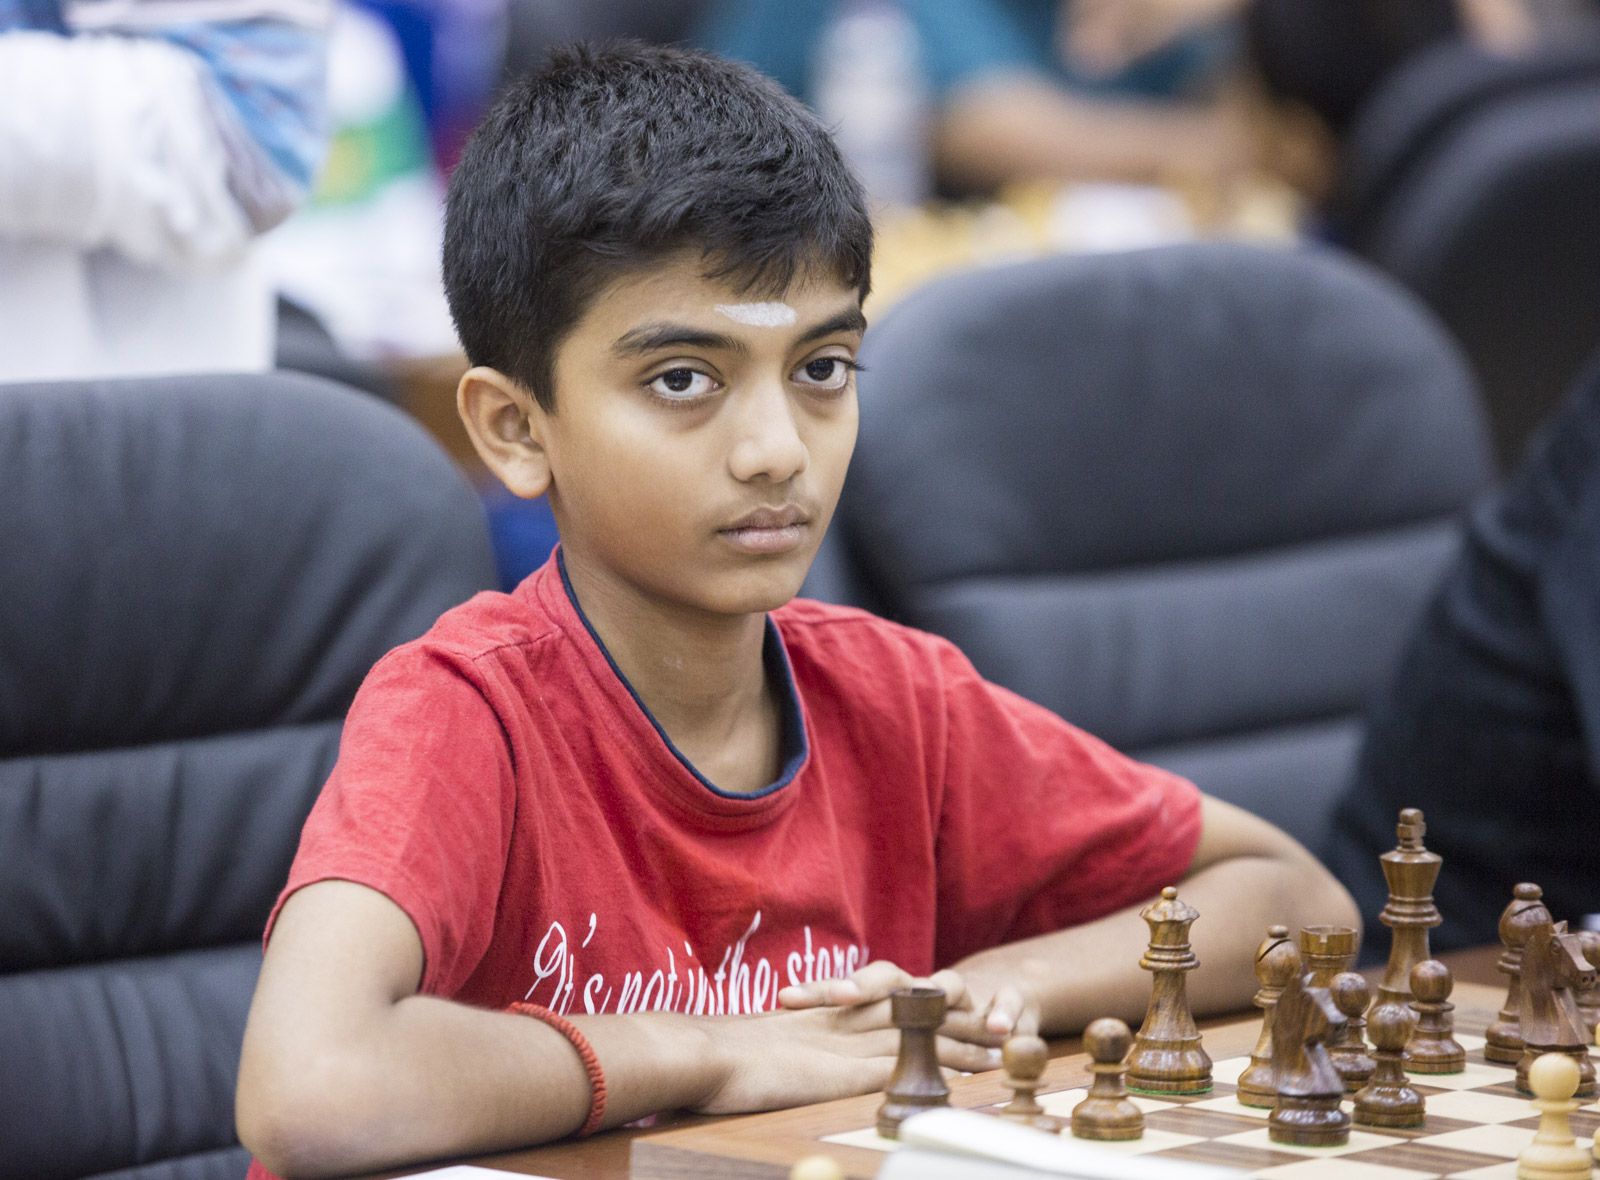 India's GM D. Gukesh wins Gijon Chess Masters